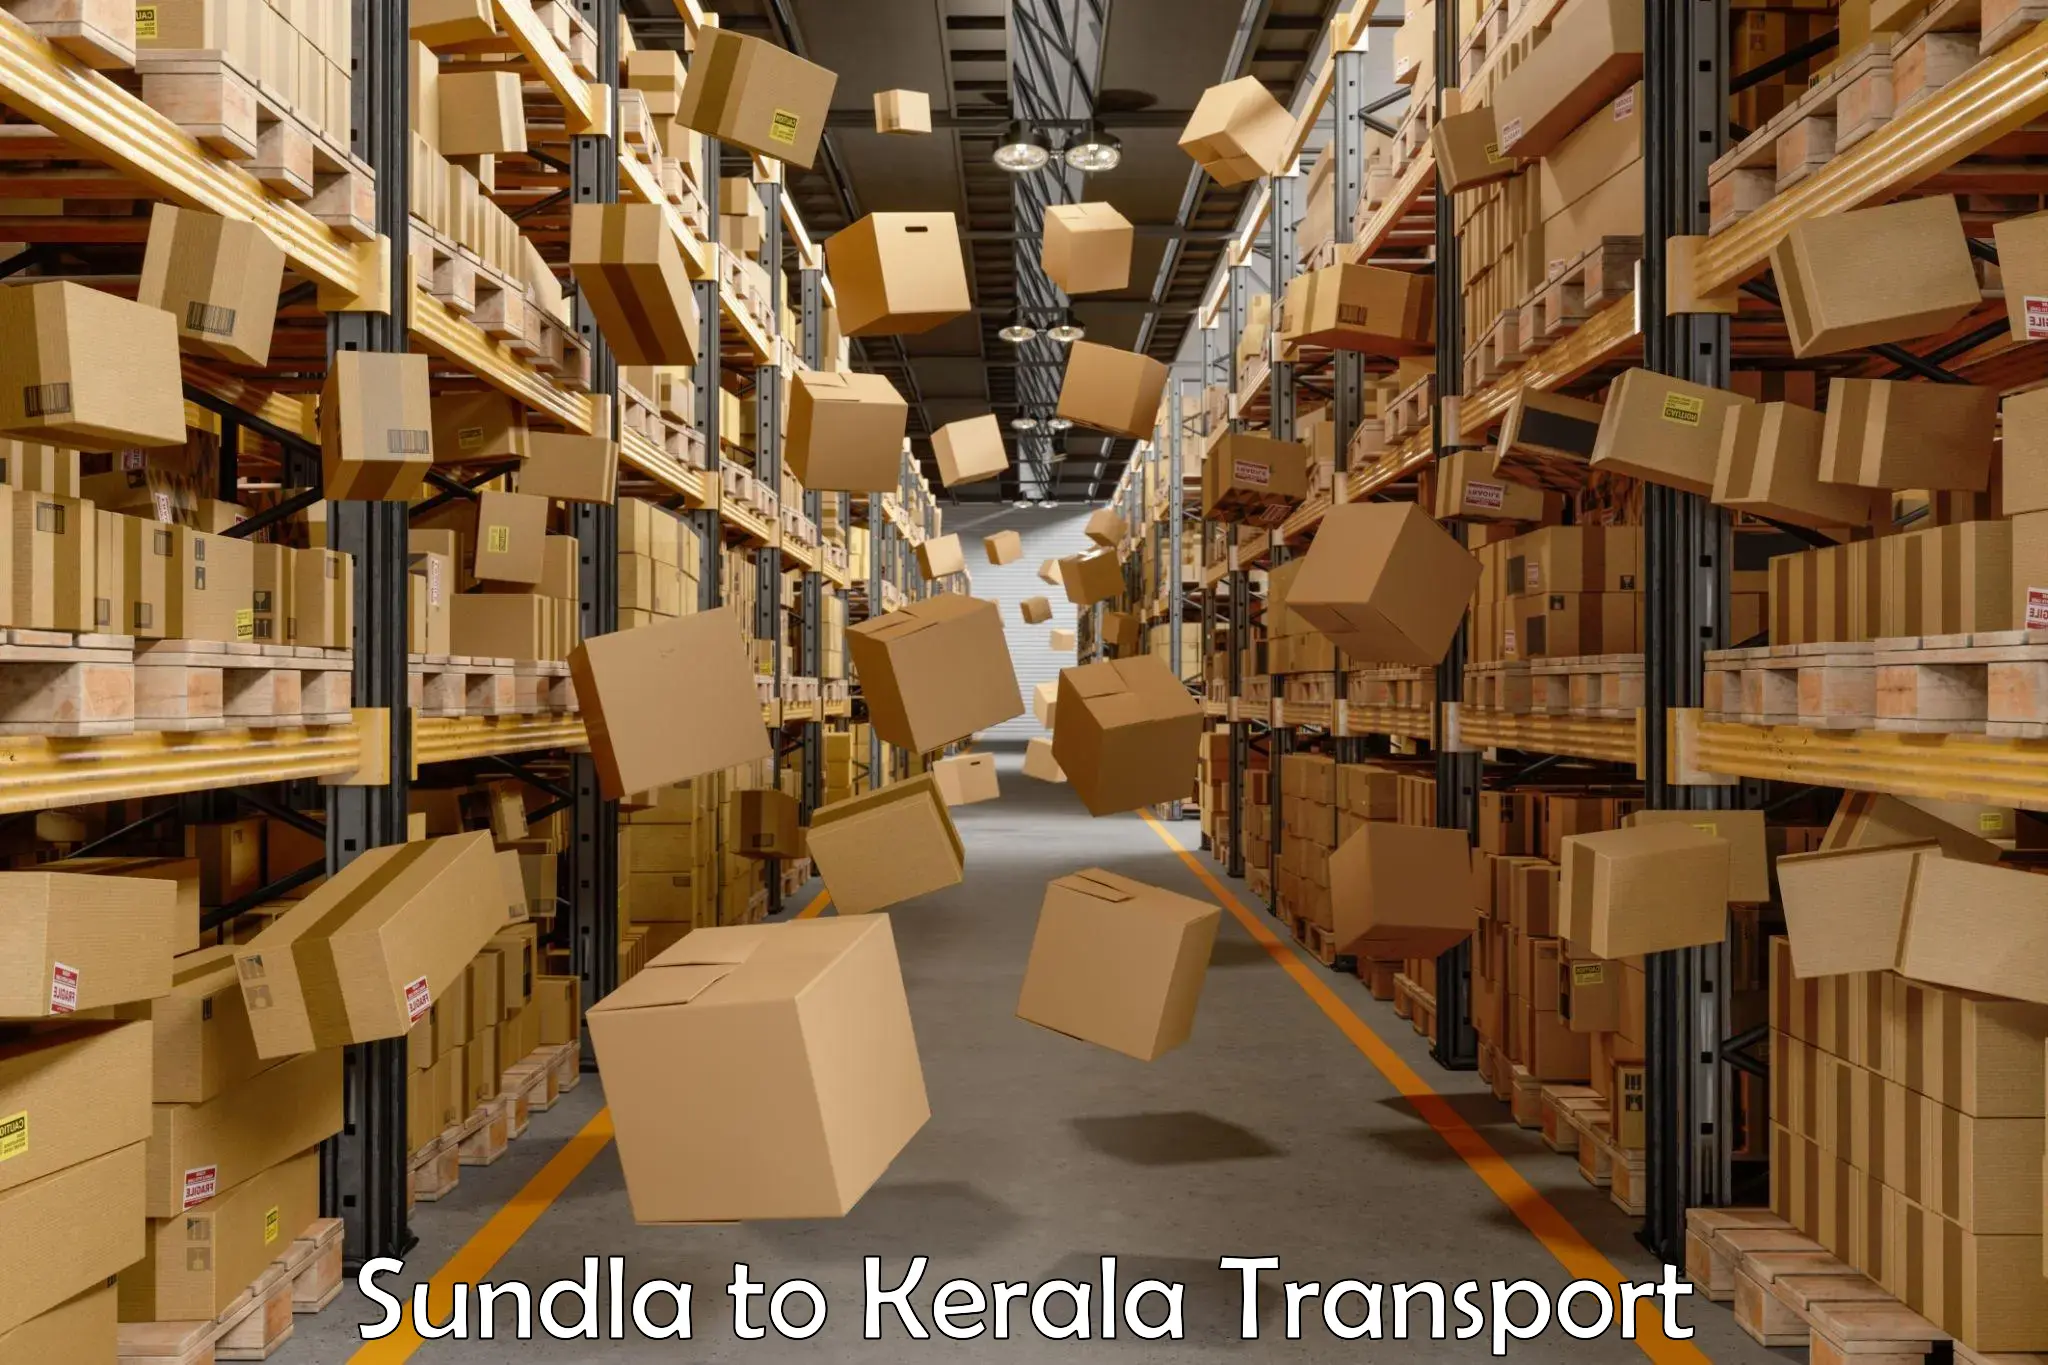 Land transport services Sundla to Pala